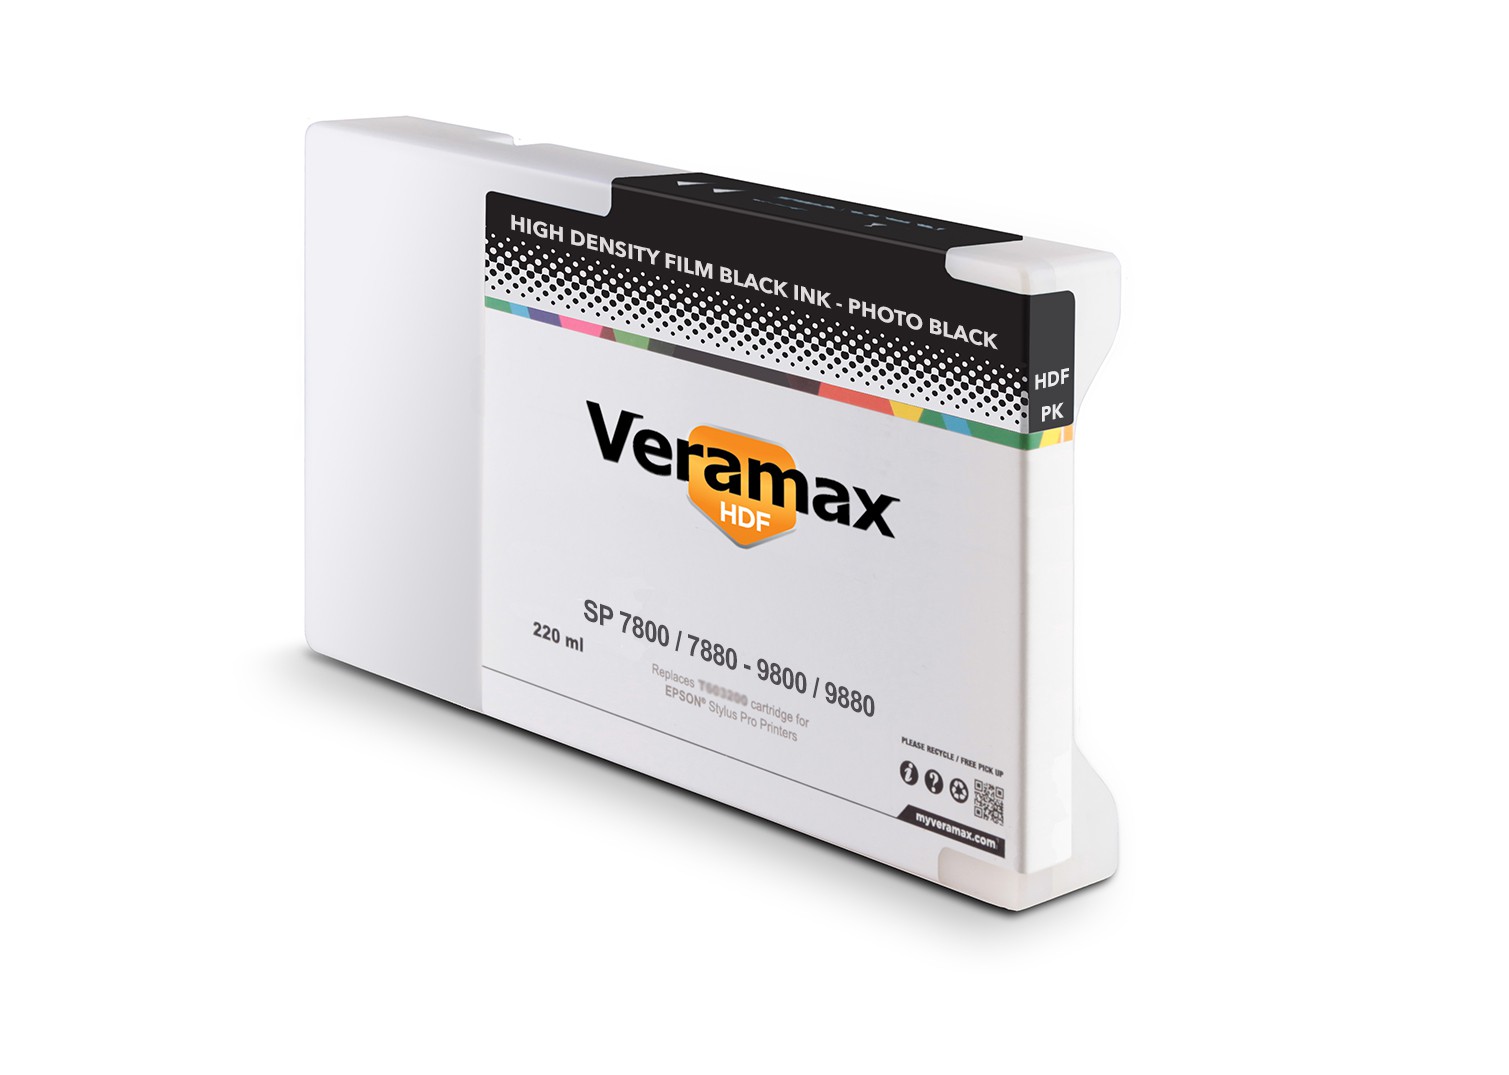 Veramax HDF Black SP 7800/9800 7880/9880 220ml Photo Black